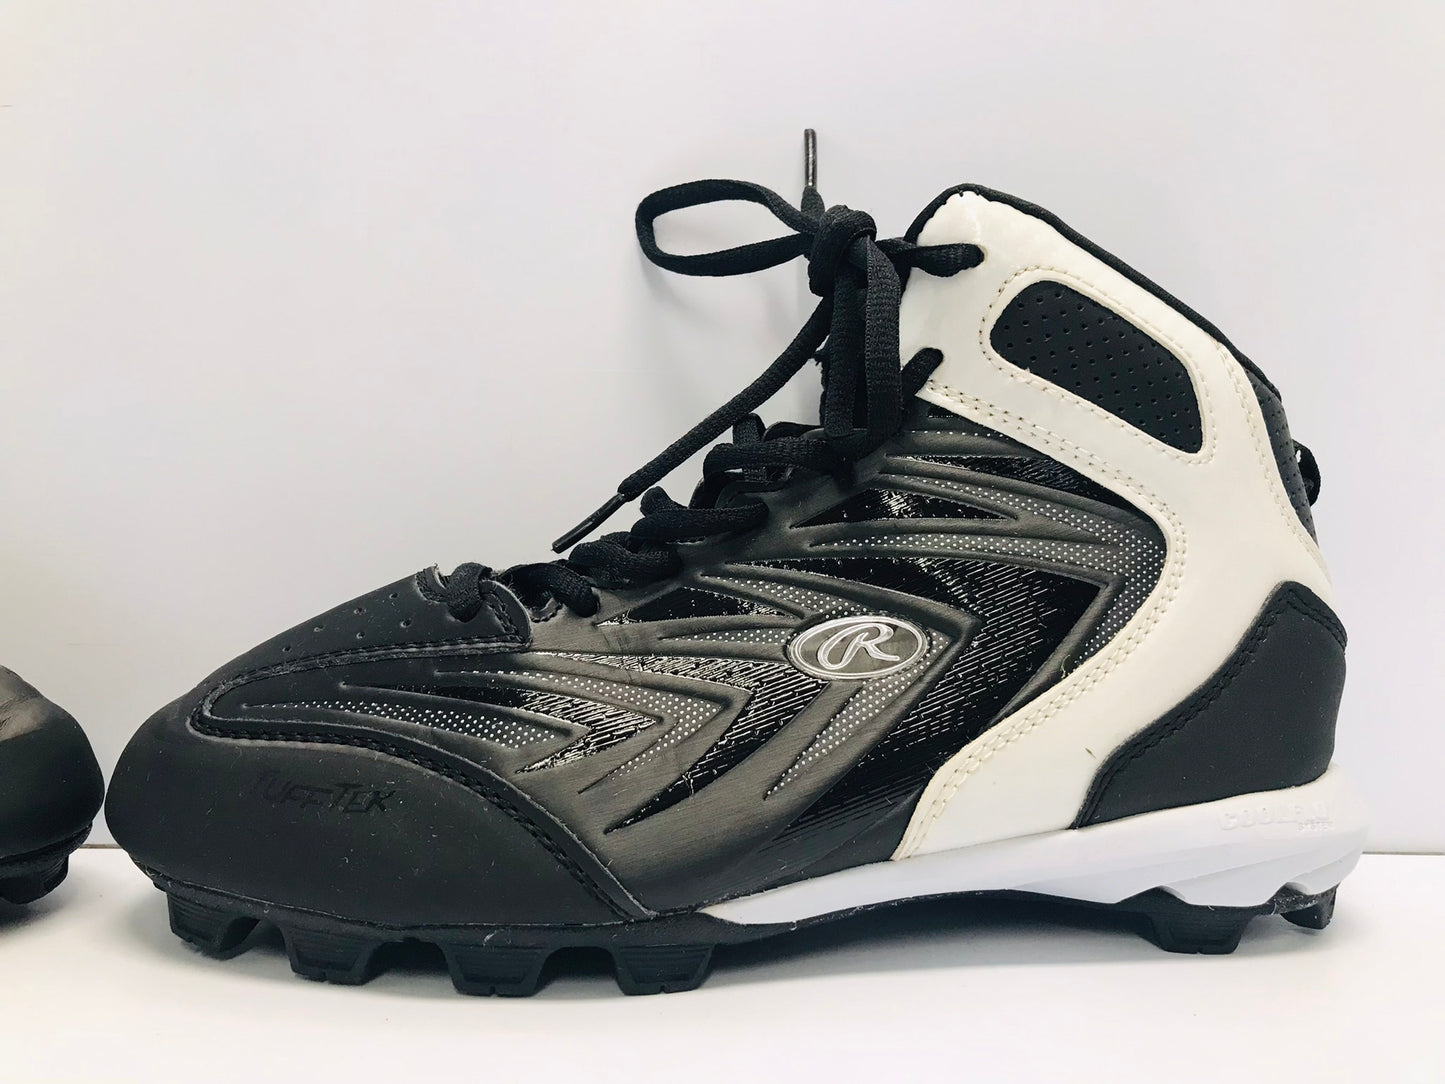 Baseball Shoes Cleats Men's Size 6 Black White Excellent